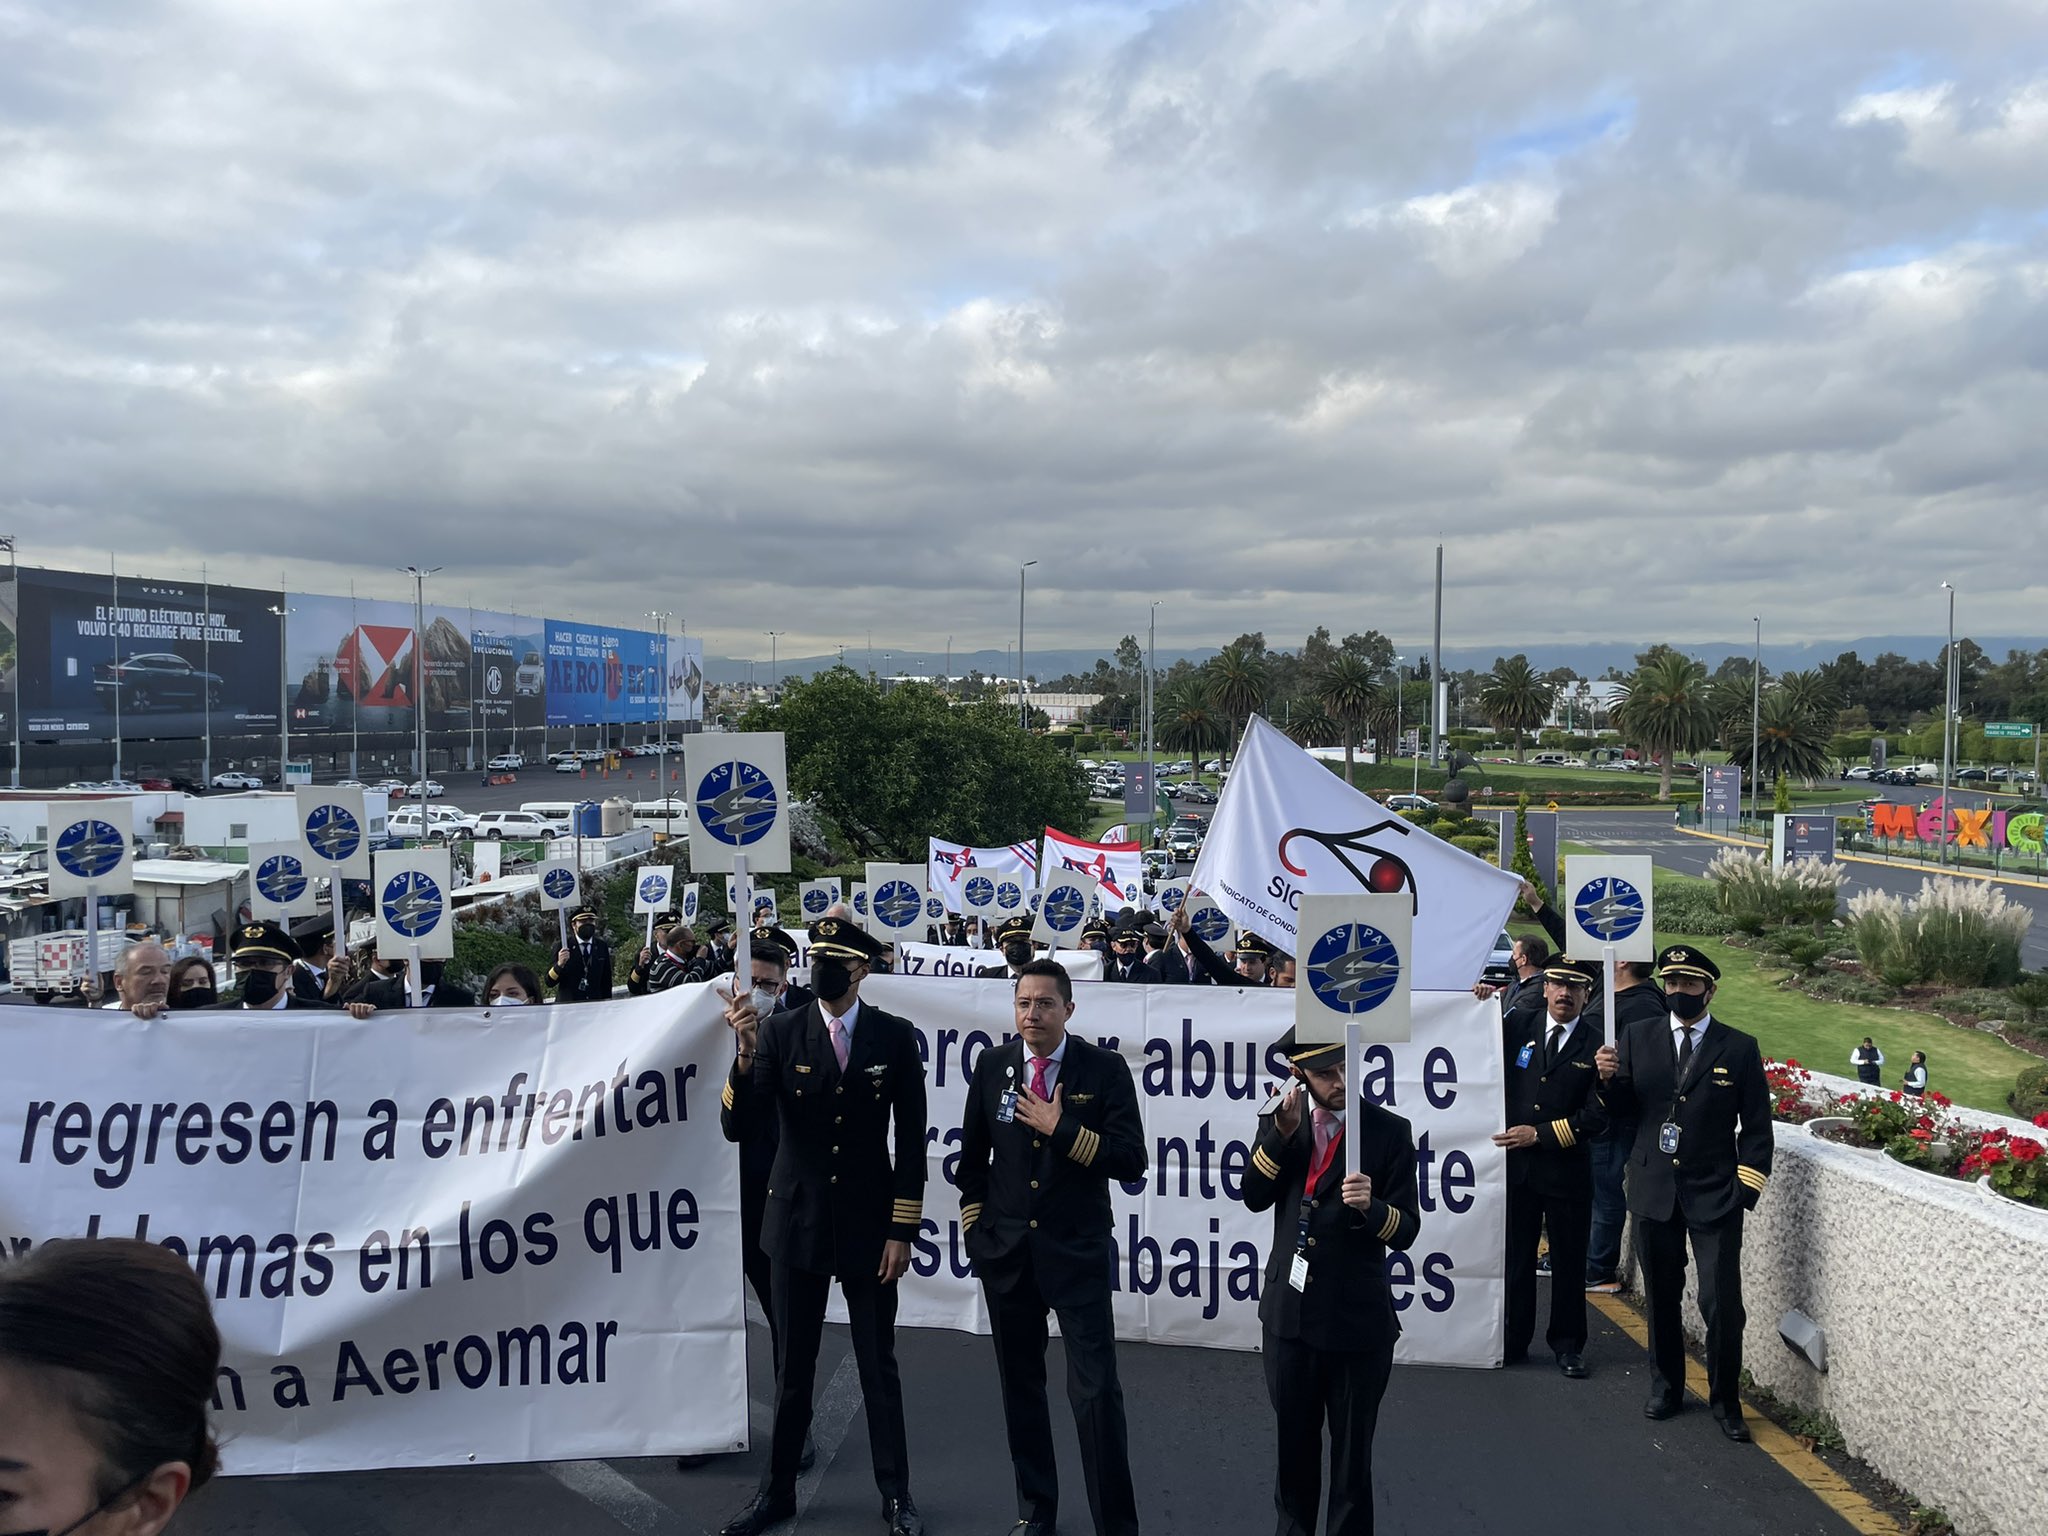 Ricardo del Valle Secretario General de la Asociación Sindical de Sobrecargos de Aviación de México dijo que el conflicto en Aeromar puede agravarse ya que la aerolínea está emplazada a huelga. (Foto: twitter/@DelvalleASSA).
